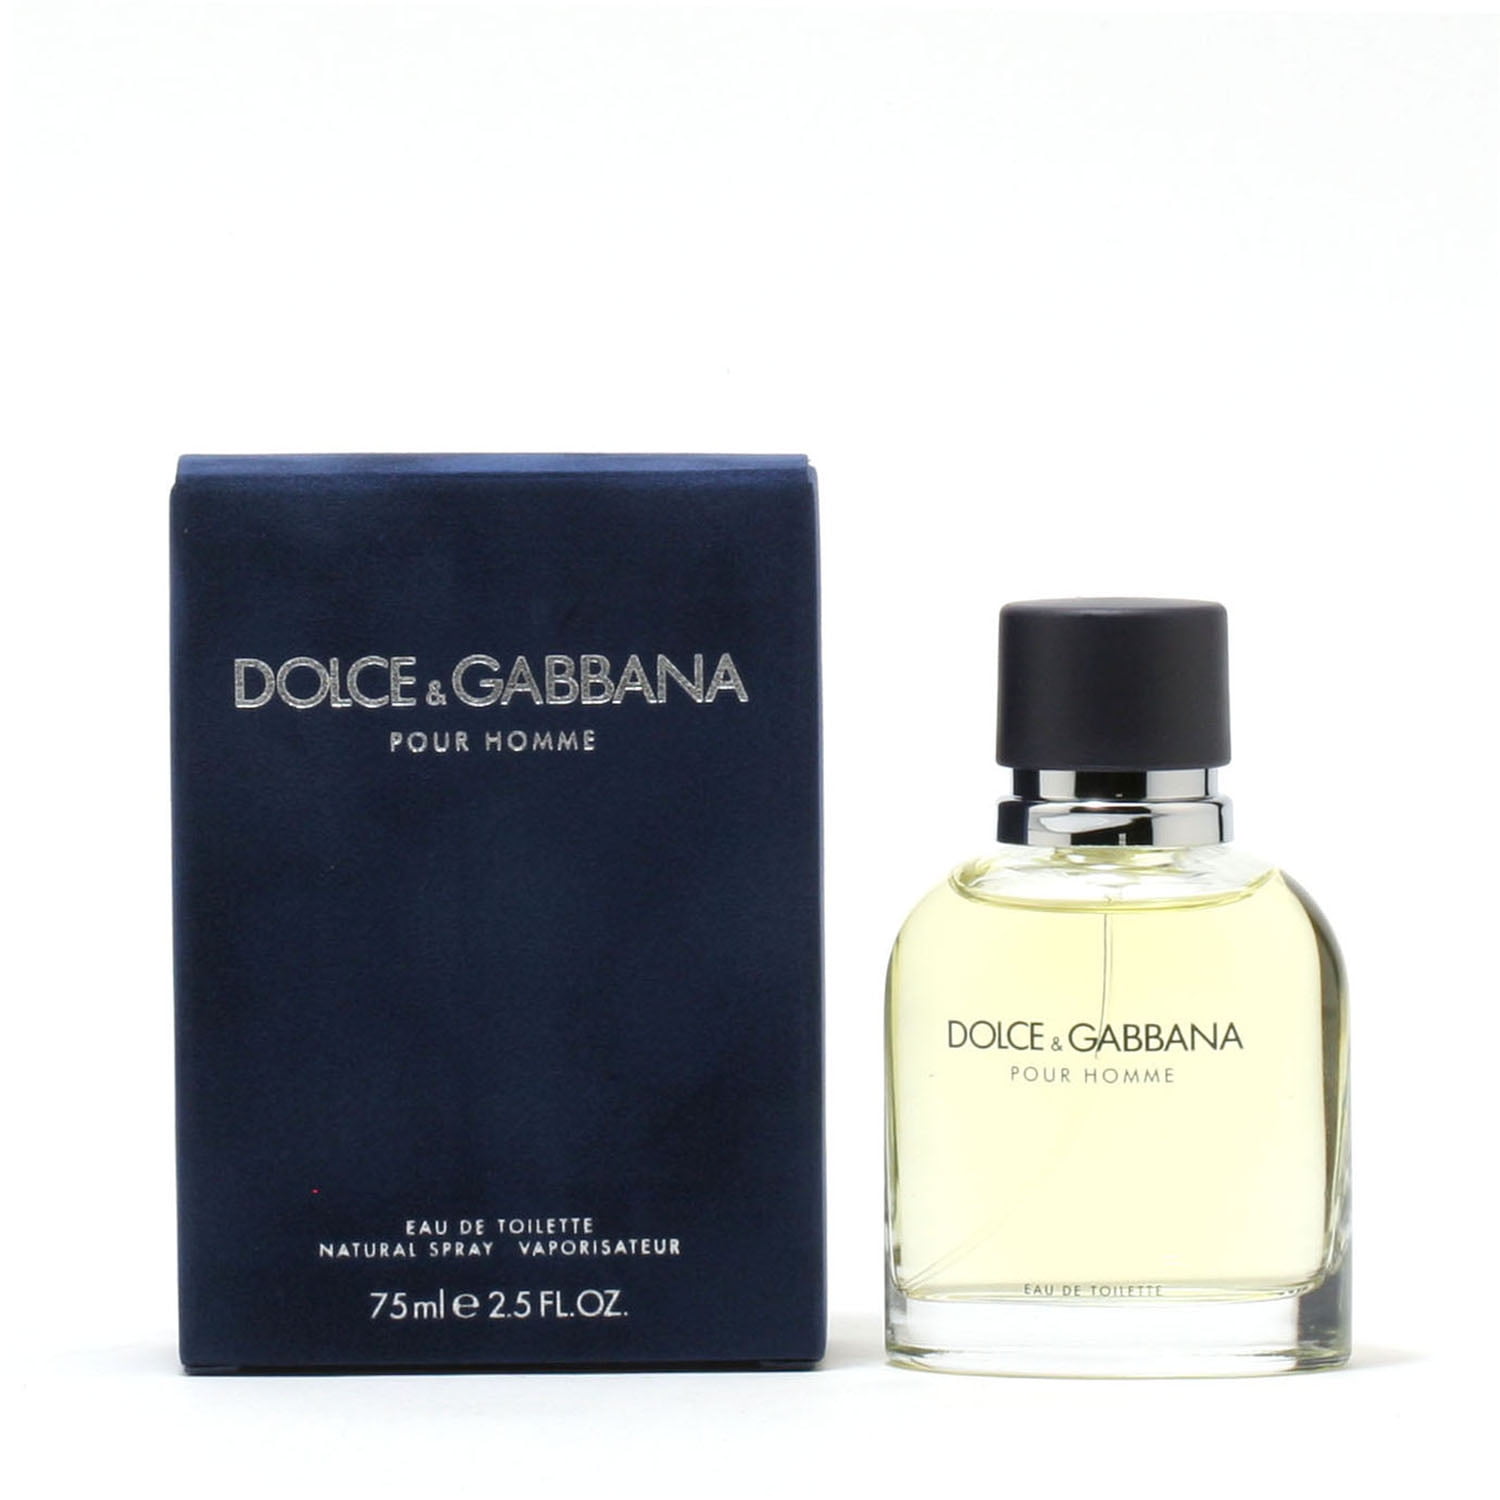 Дольче габбана пур хом. Дольче Габбана homme мужские. Dolce Gabbana pour homme Eau de Toilette made in Italy. Dolce&Gabbana pour homme упаковка. Дольче Габбана дарк черри.